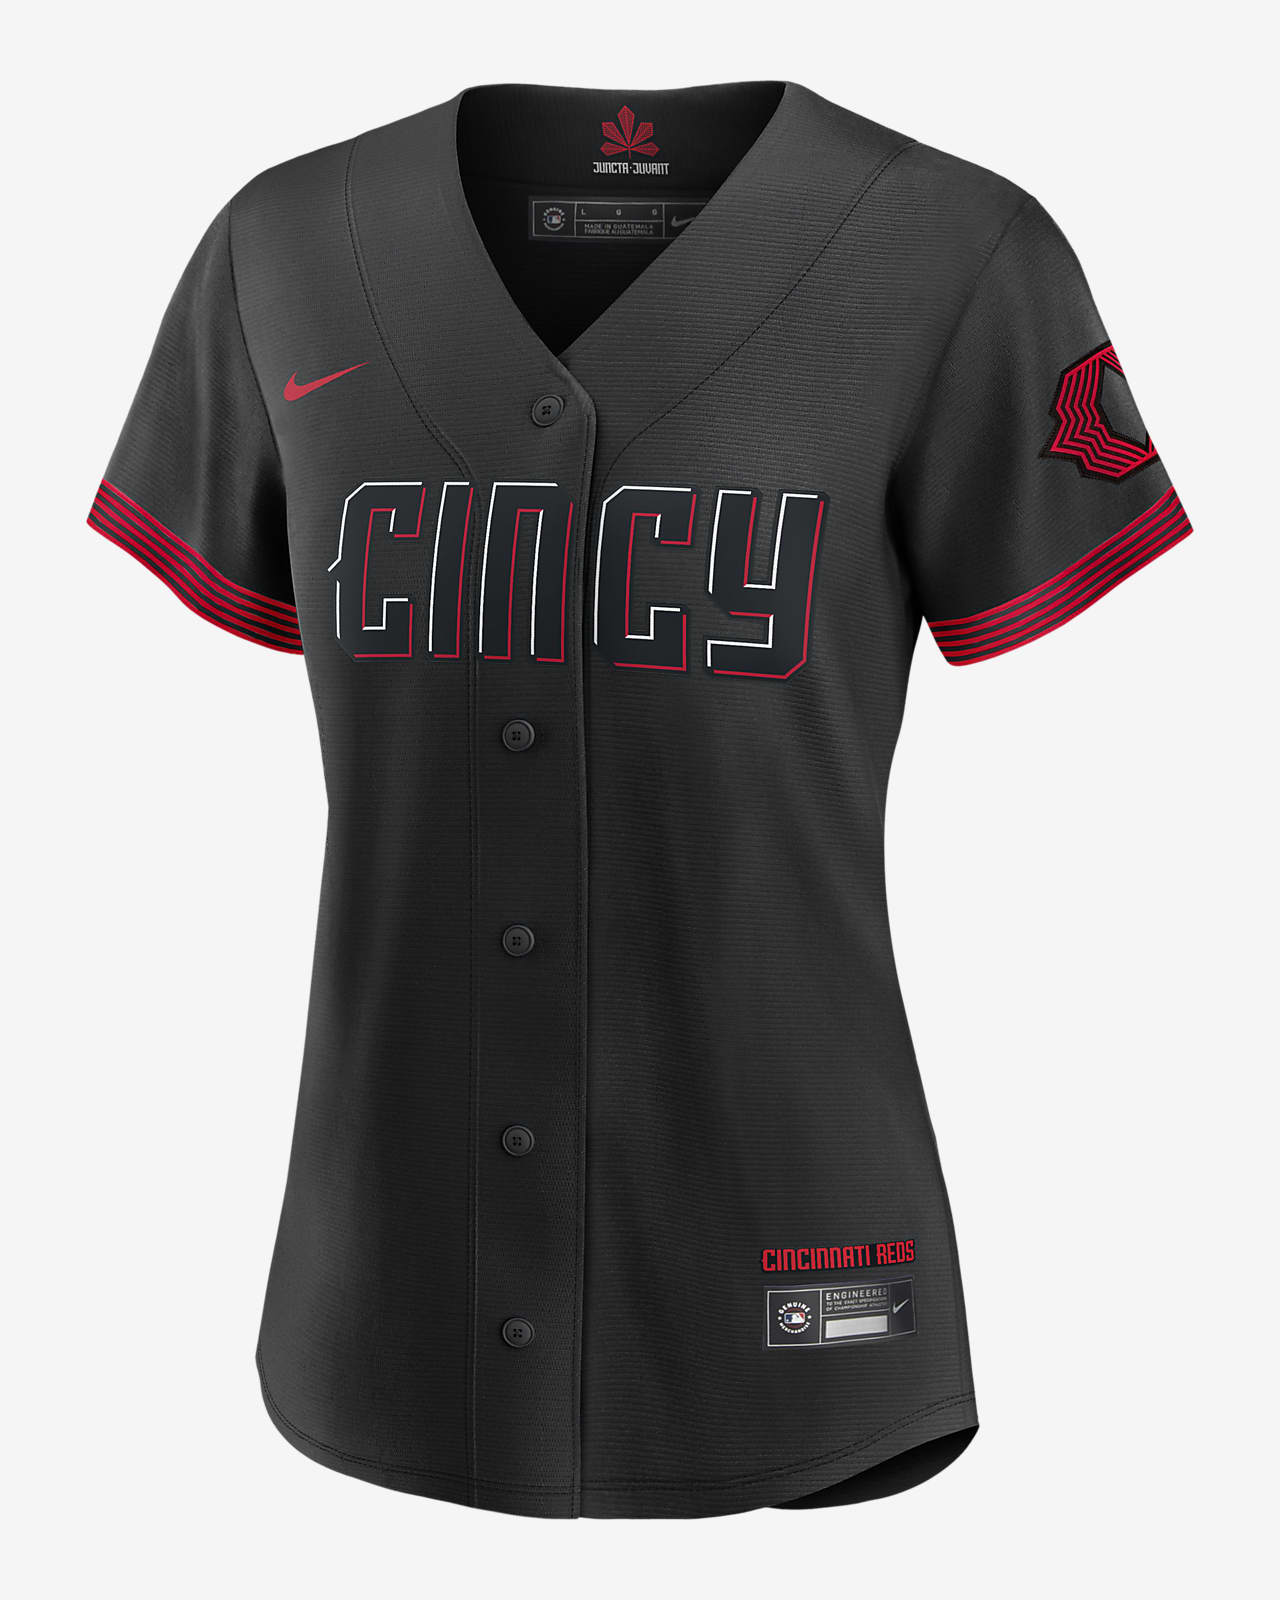 MLB Cincinnati Reds City Connect (Barry Larkin) Women's Replica Baseball Jersey